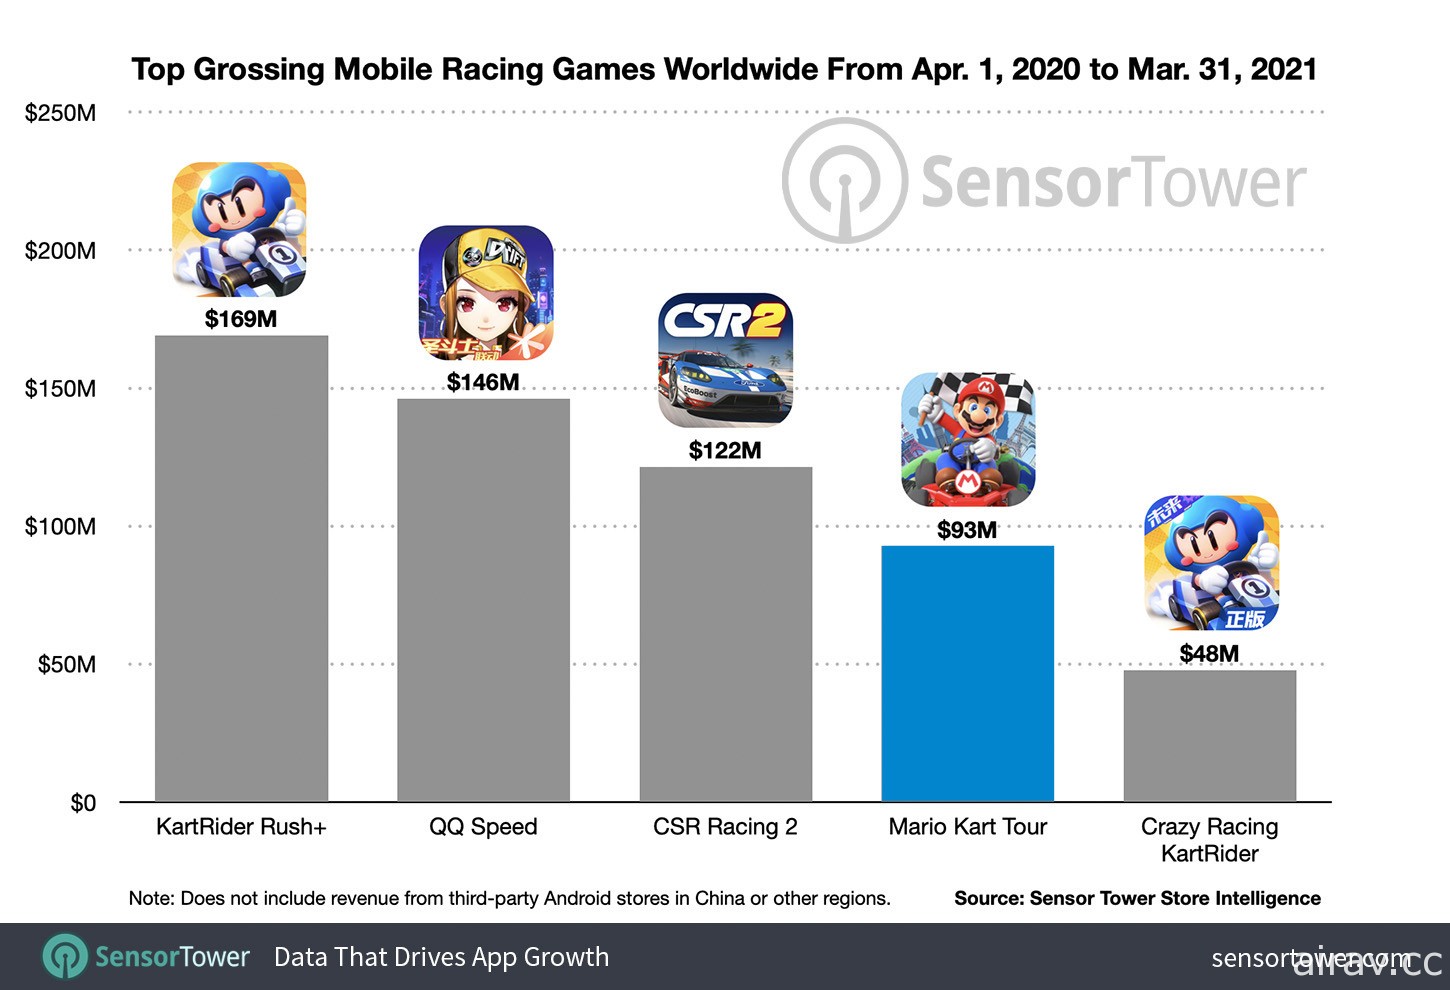 Sensor Tower 指出《瑪利歐賽車巡迴賽》累計營收達 2 億美元、下載量超過 2 億次